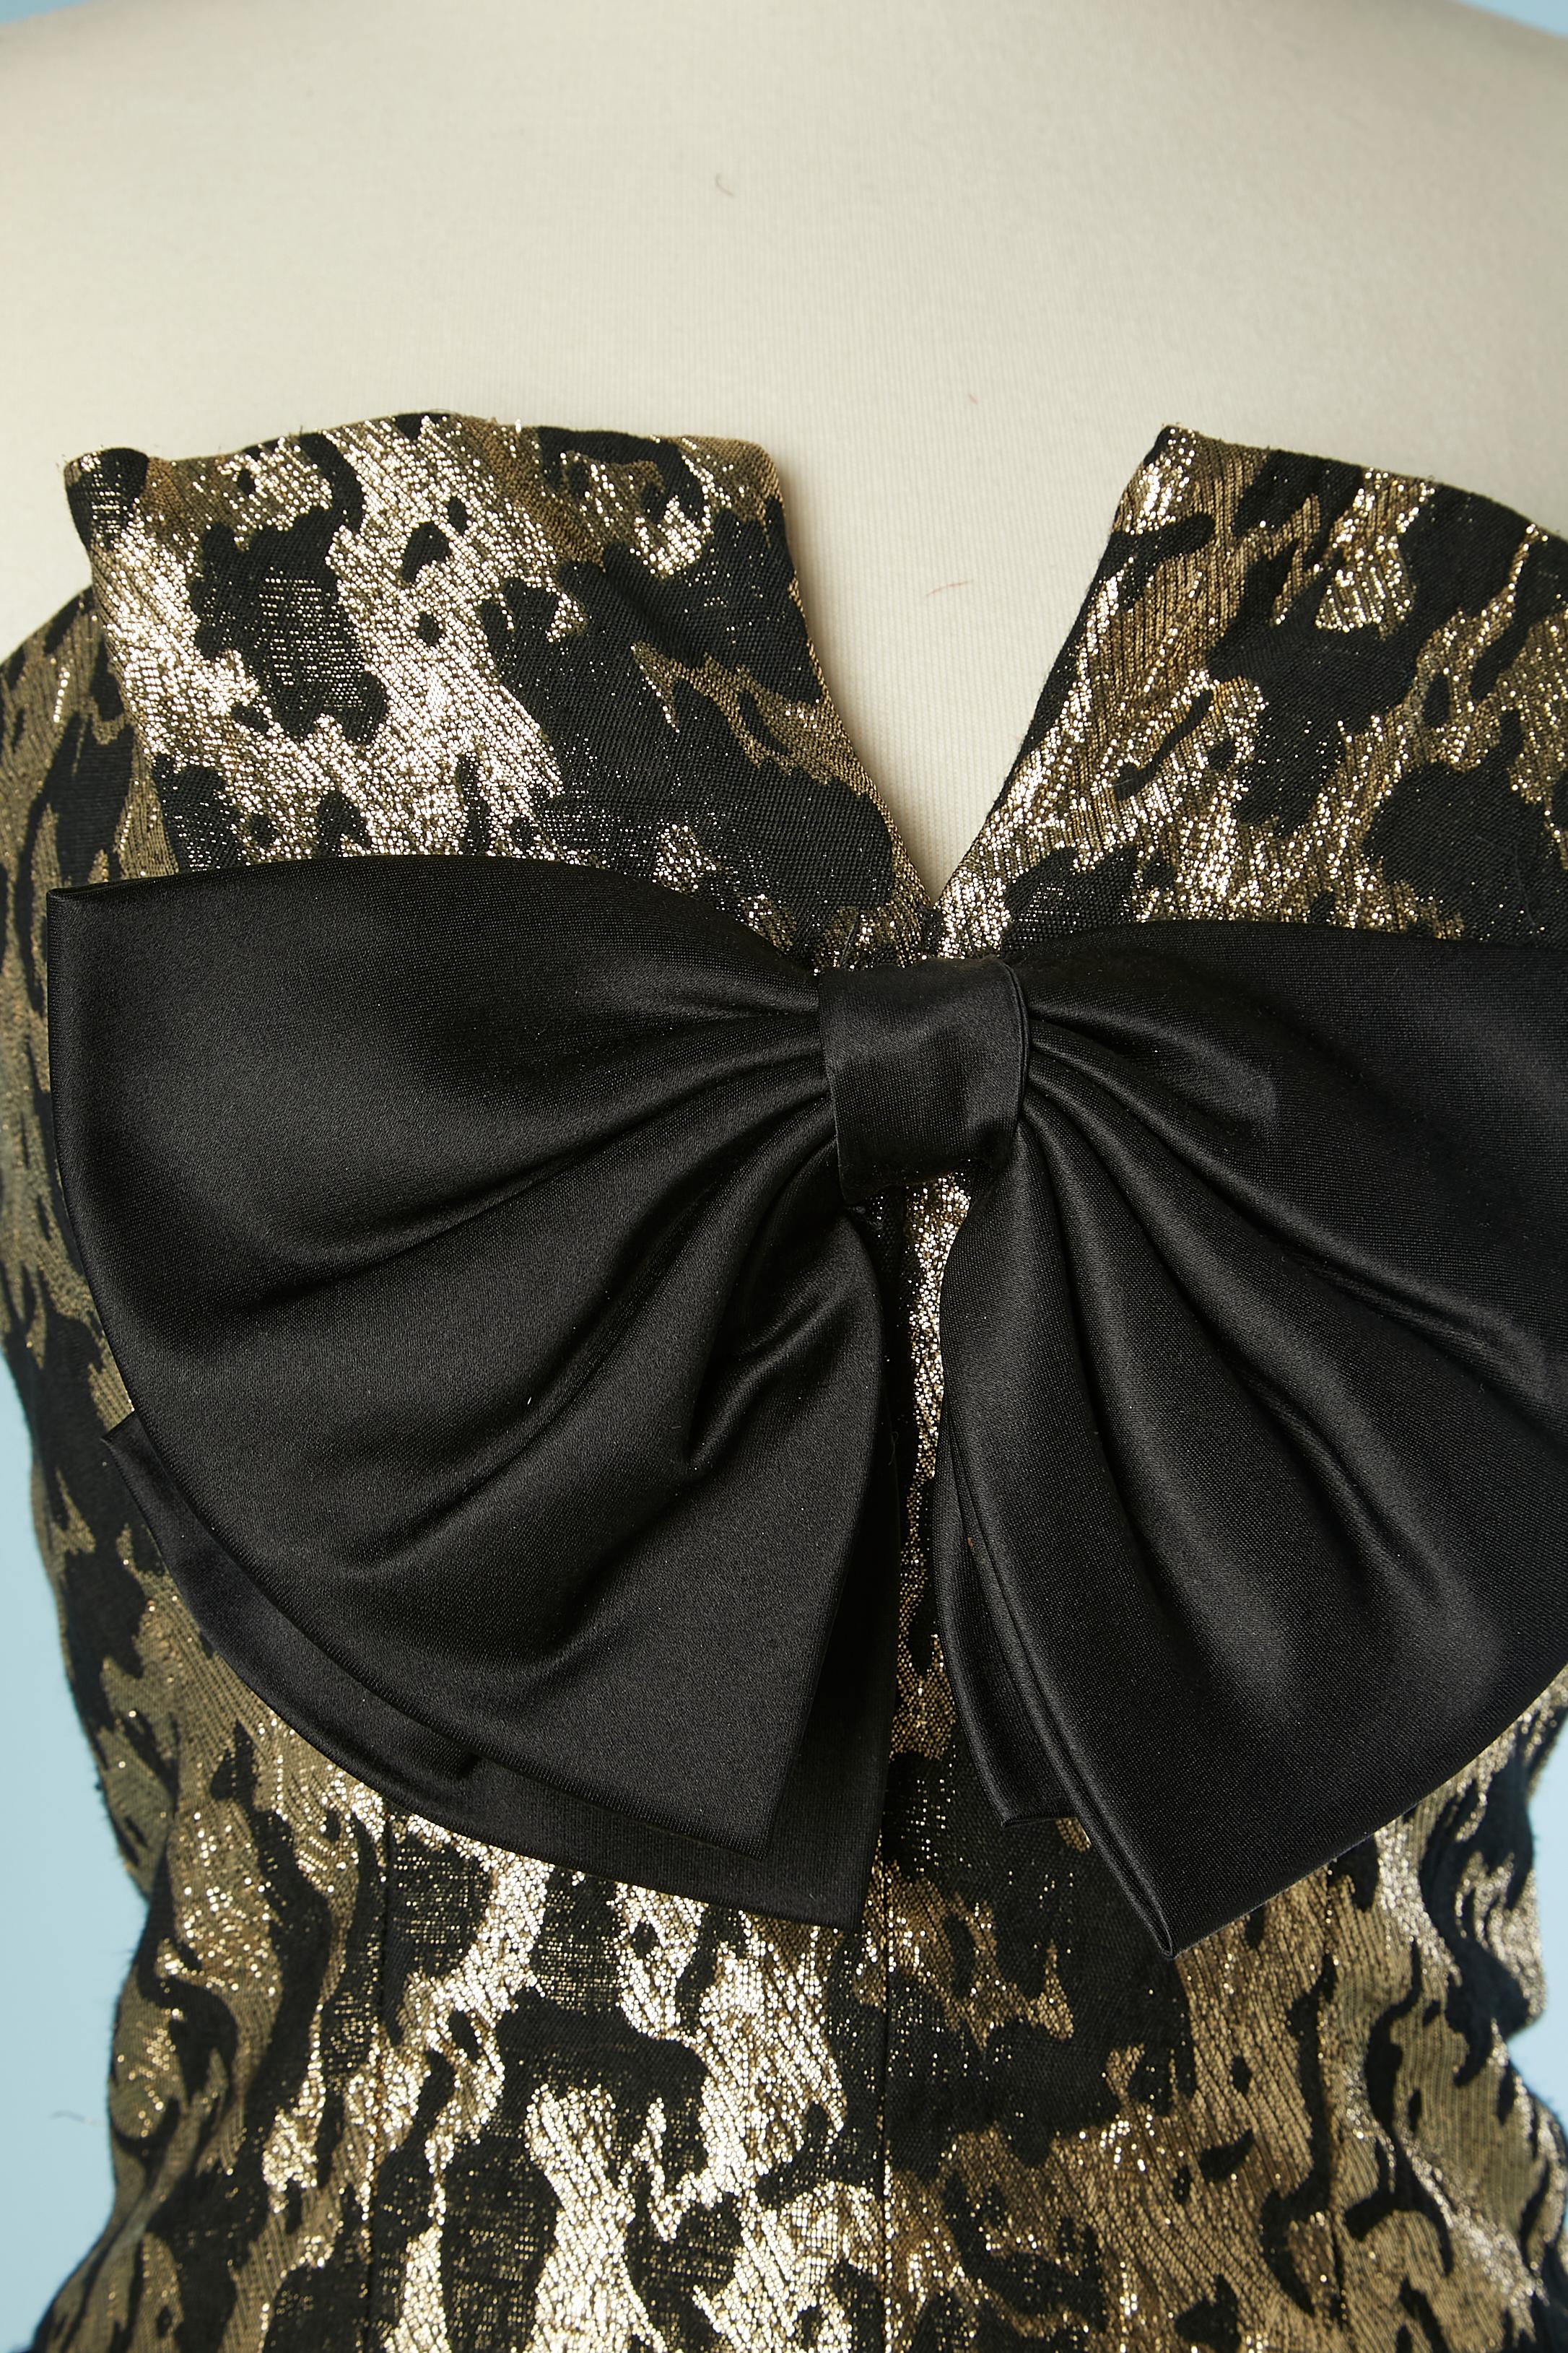 Gold-schwarzes Damast-Bustier-Cocktailkleid mit schwarzer Satinschleife an der Brust. 
Das Etikett mit der Stoffzusammensetzung wurde abgeschnitten, aber das Futter ist wahrscheinlich aus Acetat. Petticoat darunter aus 2 Lagen, eine aus schwarzem